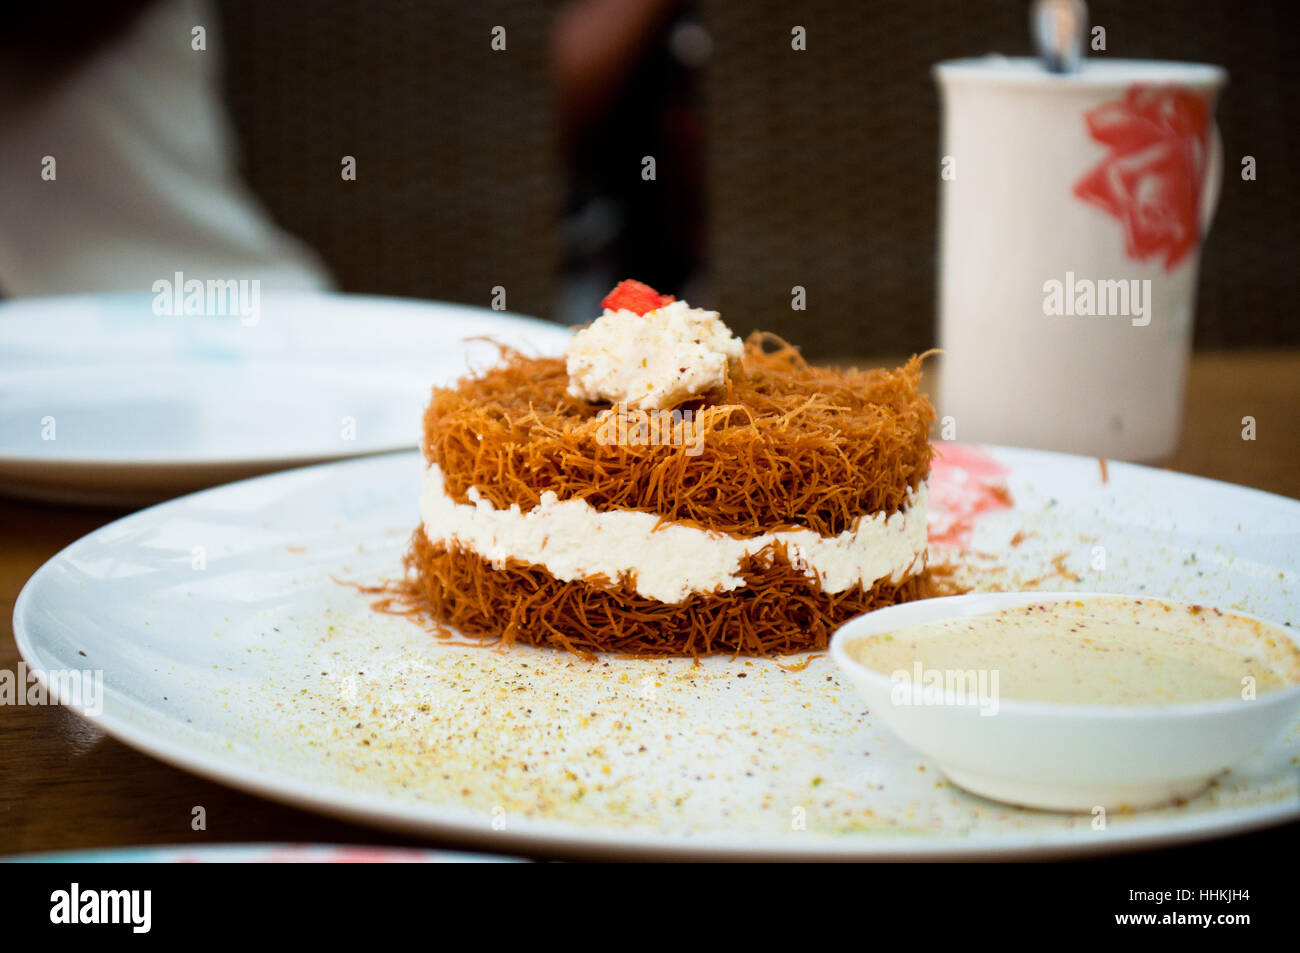 Cibo, aliment, dolce gusto, croccante, dessert, mangiare, mangiare, mangia, libanese Foto Stock